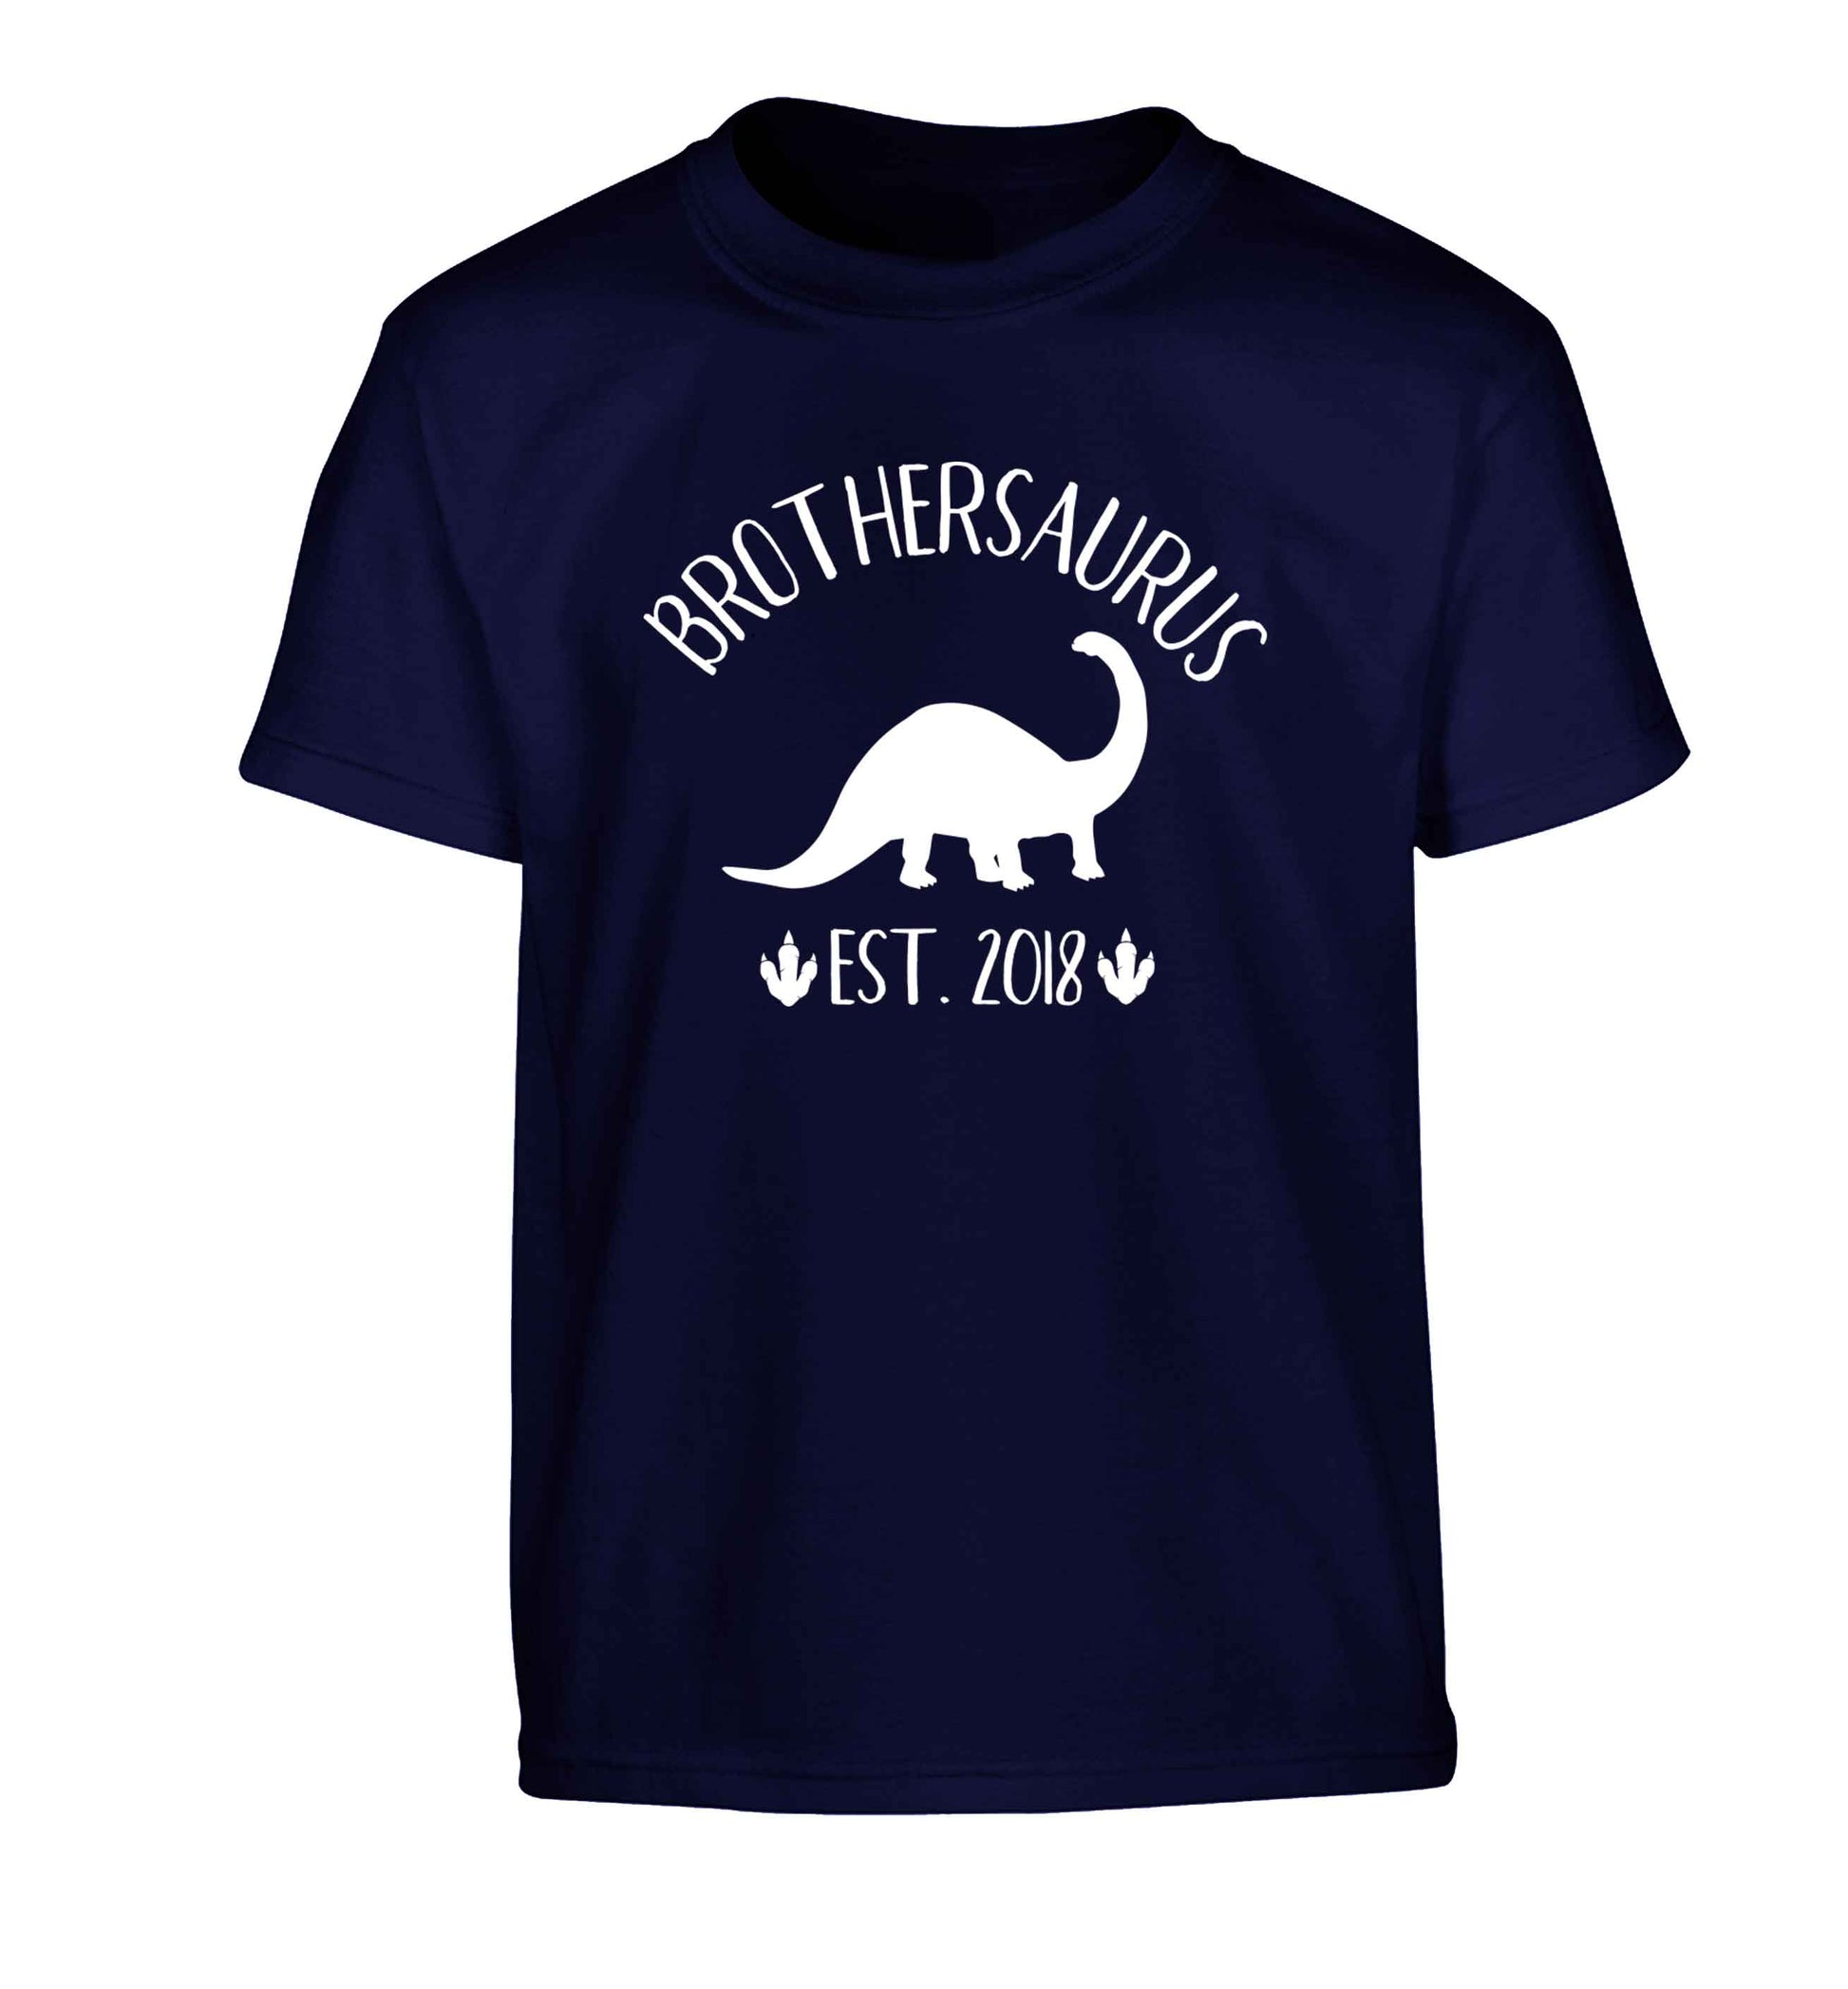 Personalised brothersaurus since (custom date) Children's navy Tshirt 12-13 Years